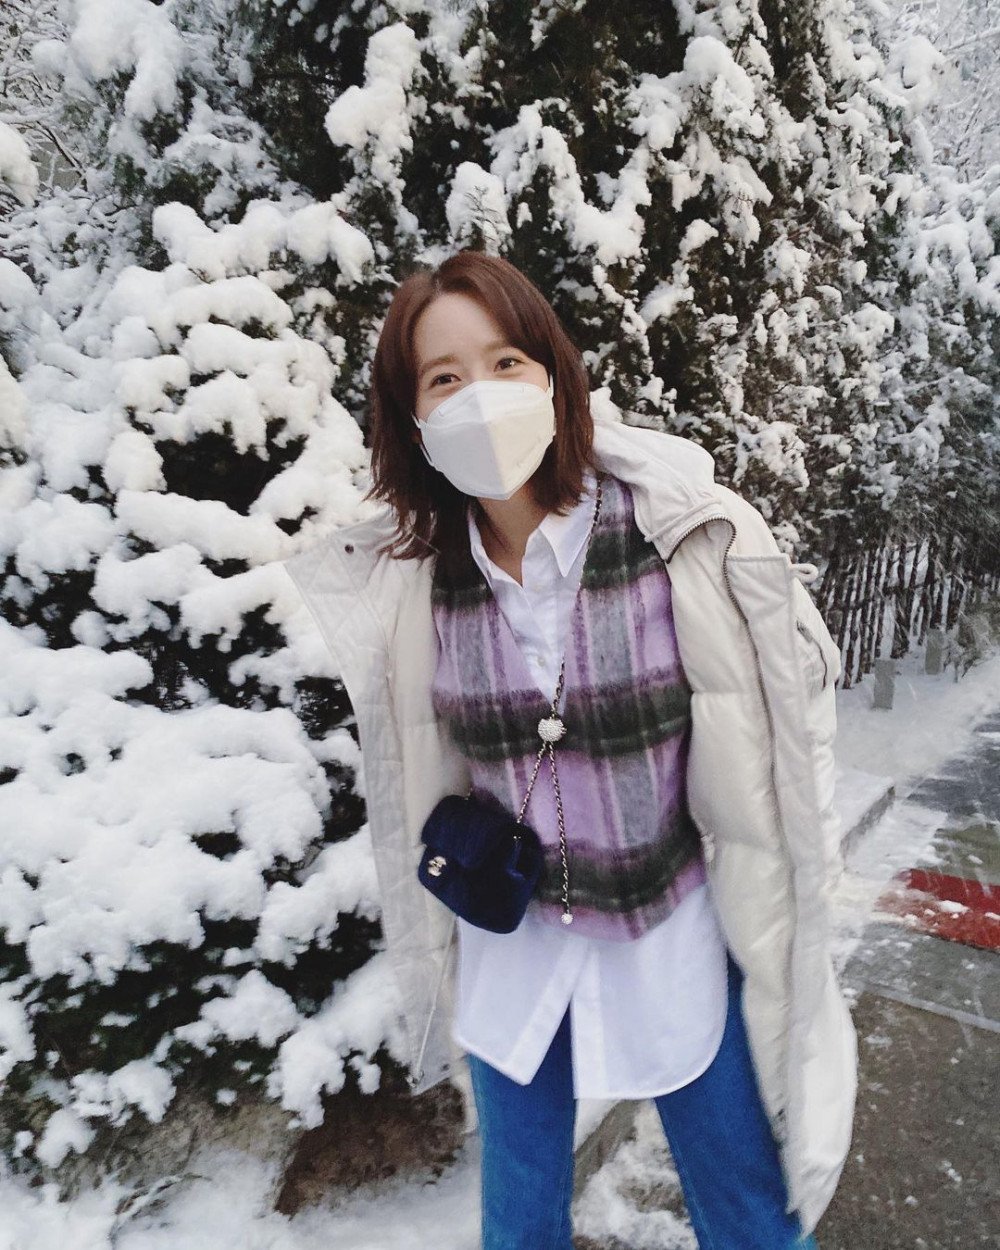 ЮнА из Girls' Generation поделилась фотографиями из зимней страны чудес